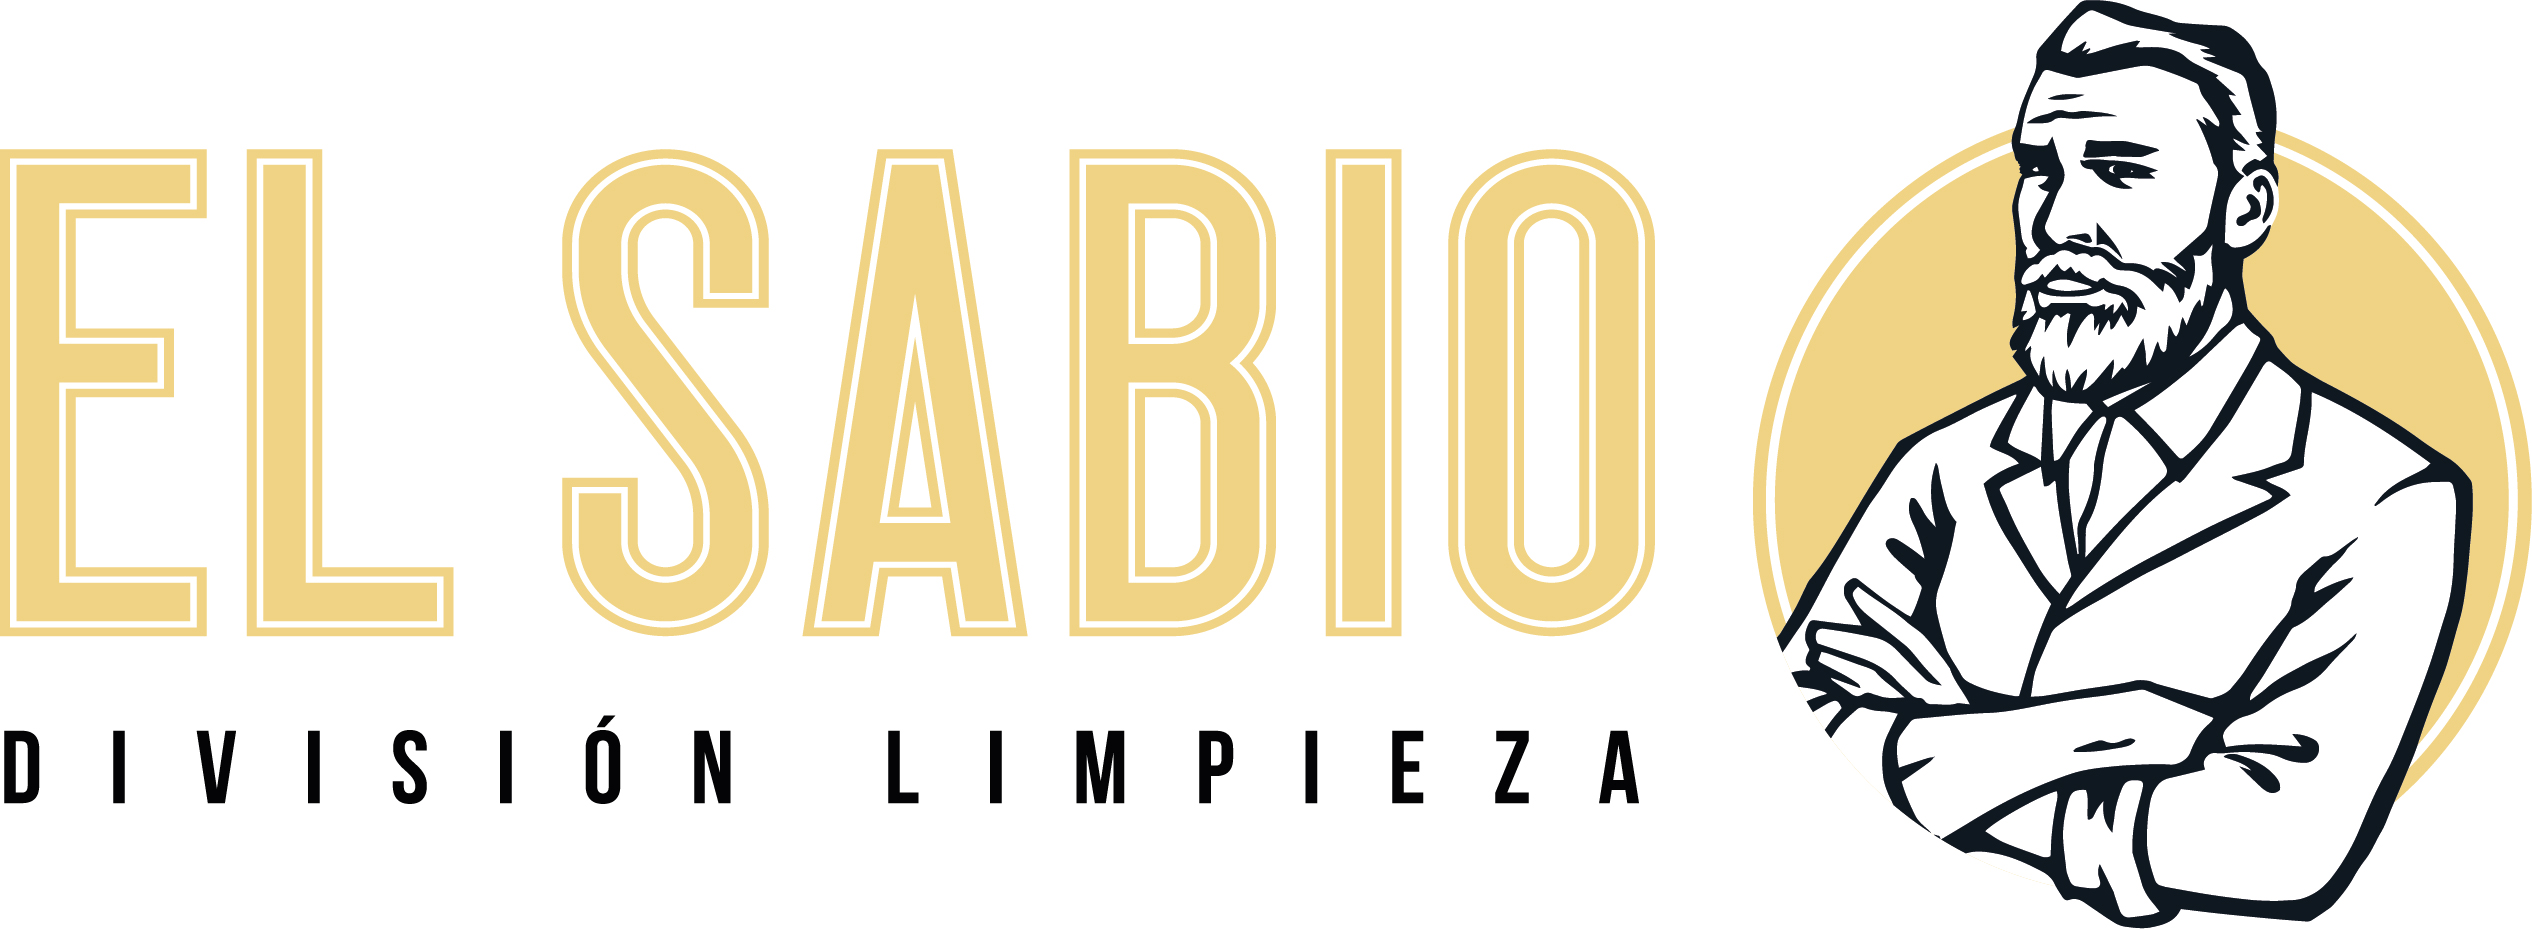 Logo El sabio